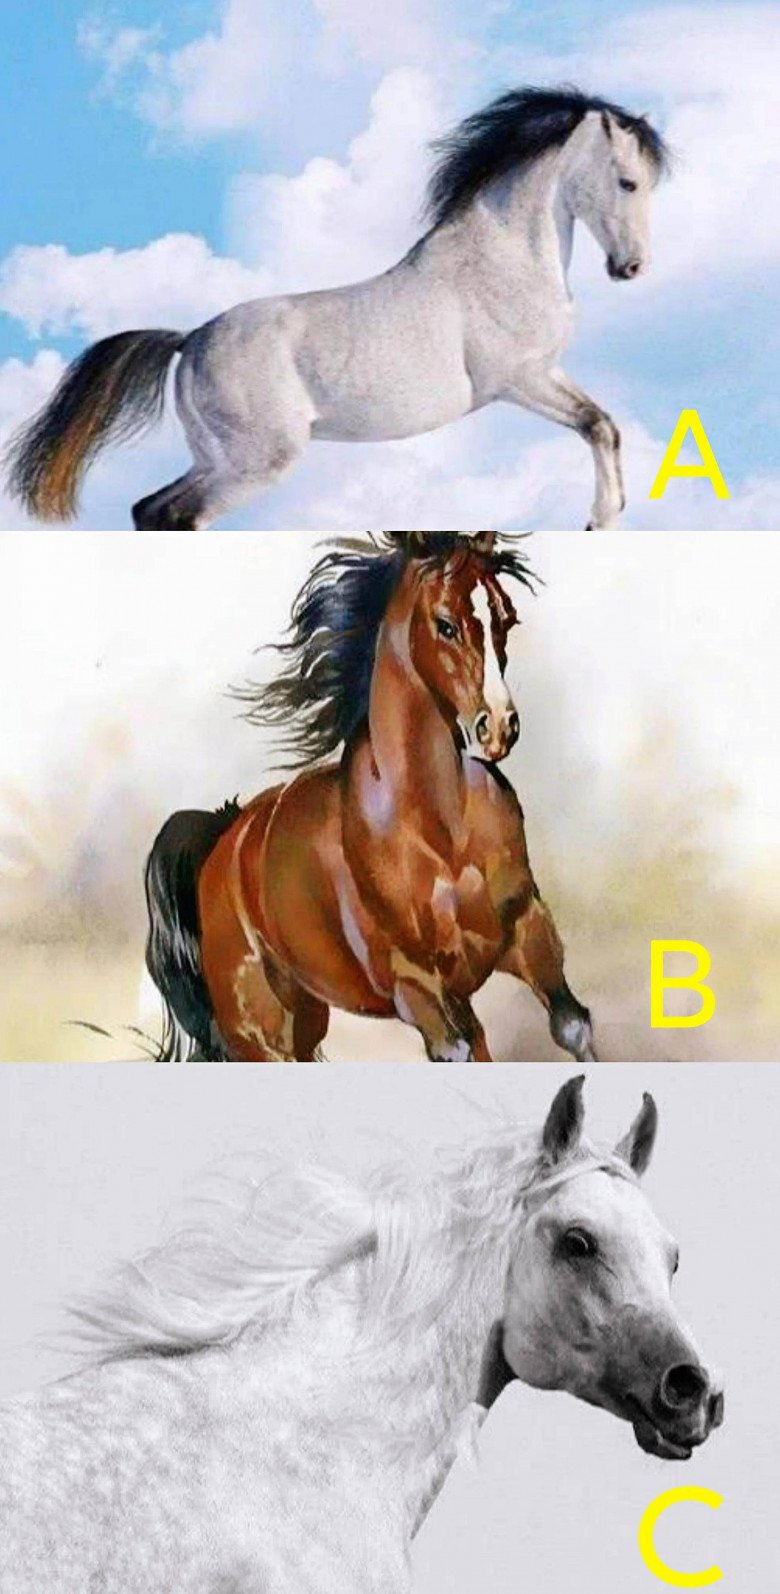 Trắc nghiệm tâm lý: Bạn nghĩ con ngựa nào chạy nhanh nhất? - 1